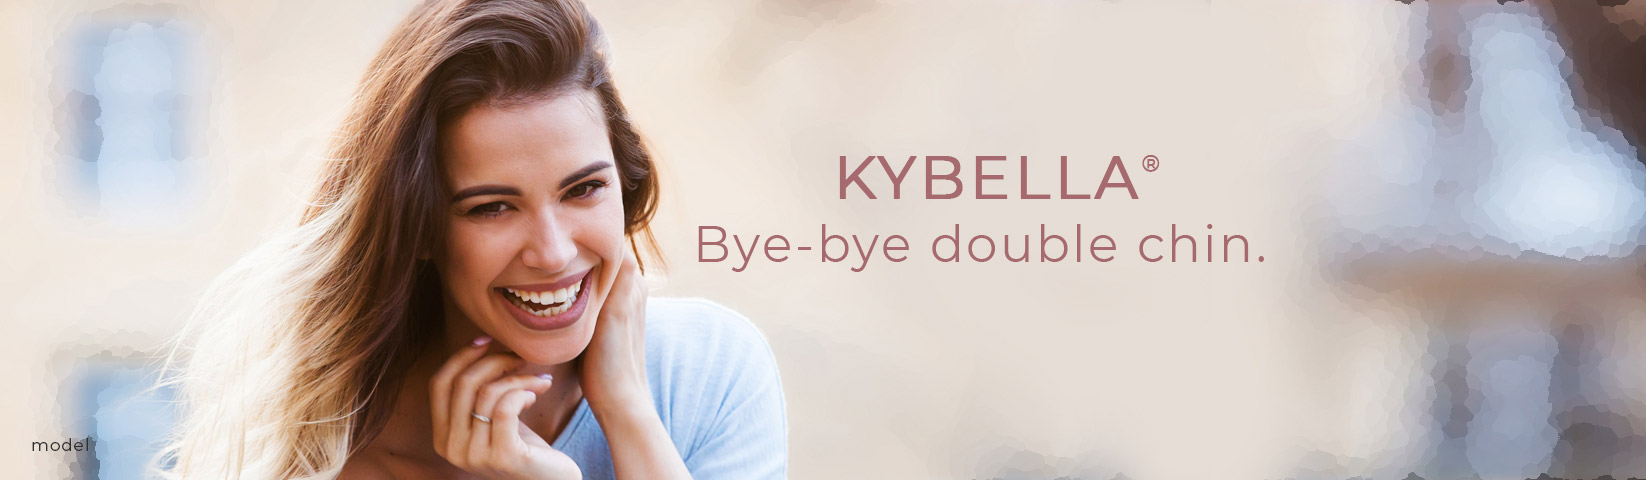 Kybella: Bye-bye double chin